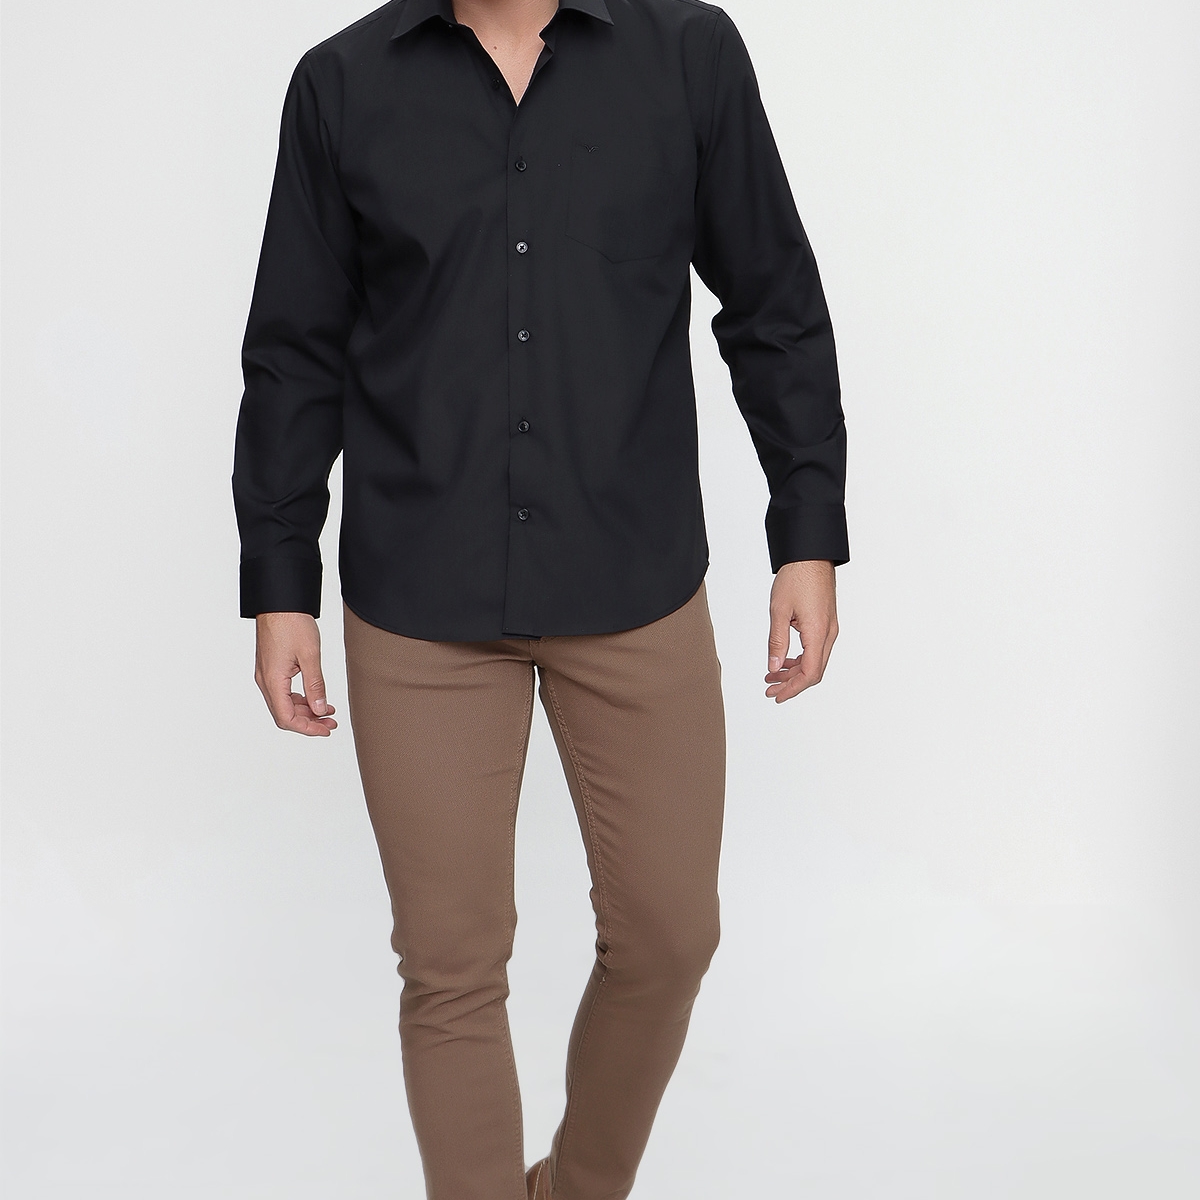 Flo Erkek Elegance Regular Fit Gömlek Siyah. 2